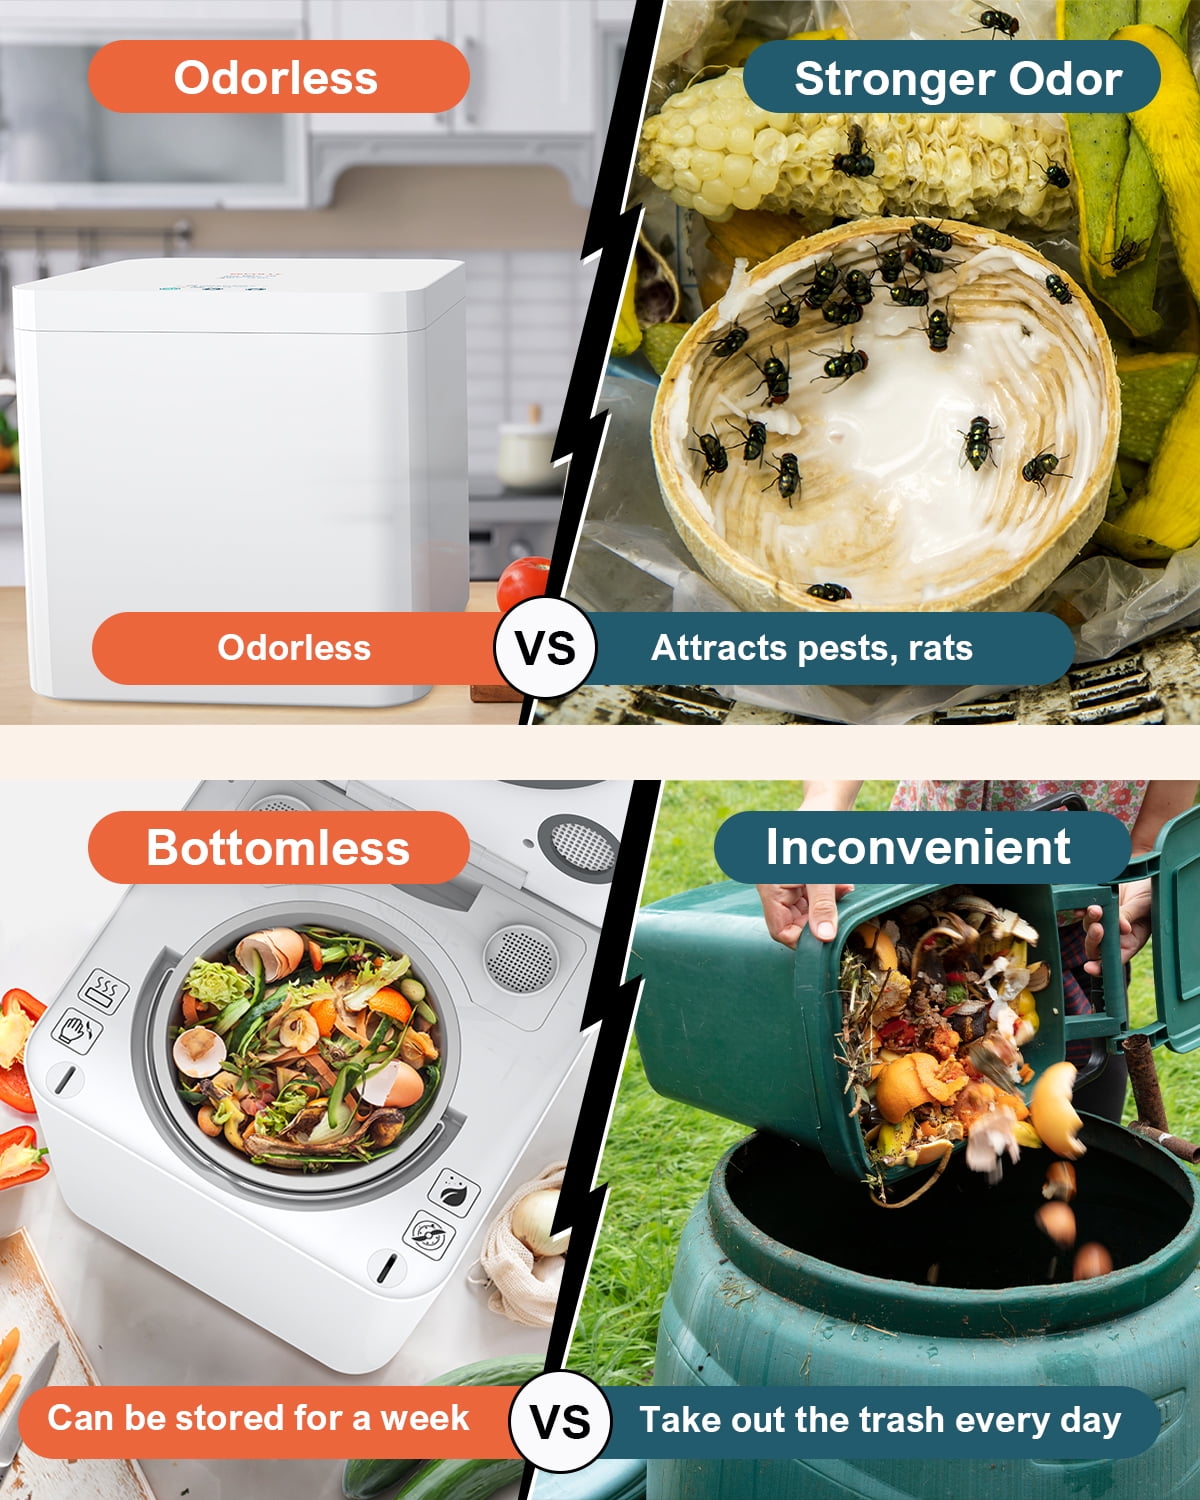 3L Kitchen Counter Top Smart Machine Food Waste Composter Kitchen